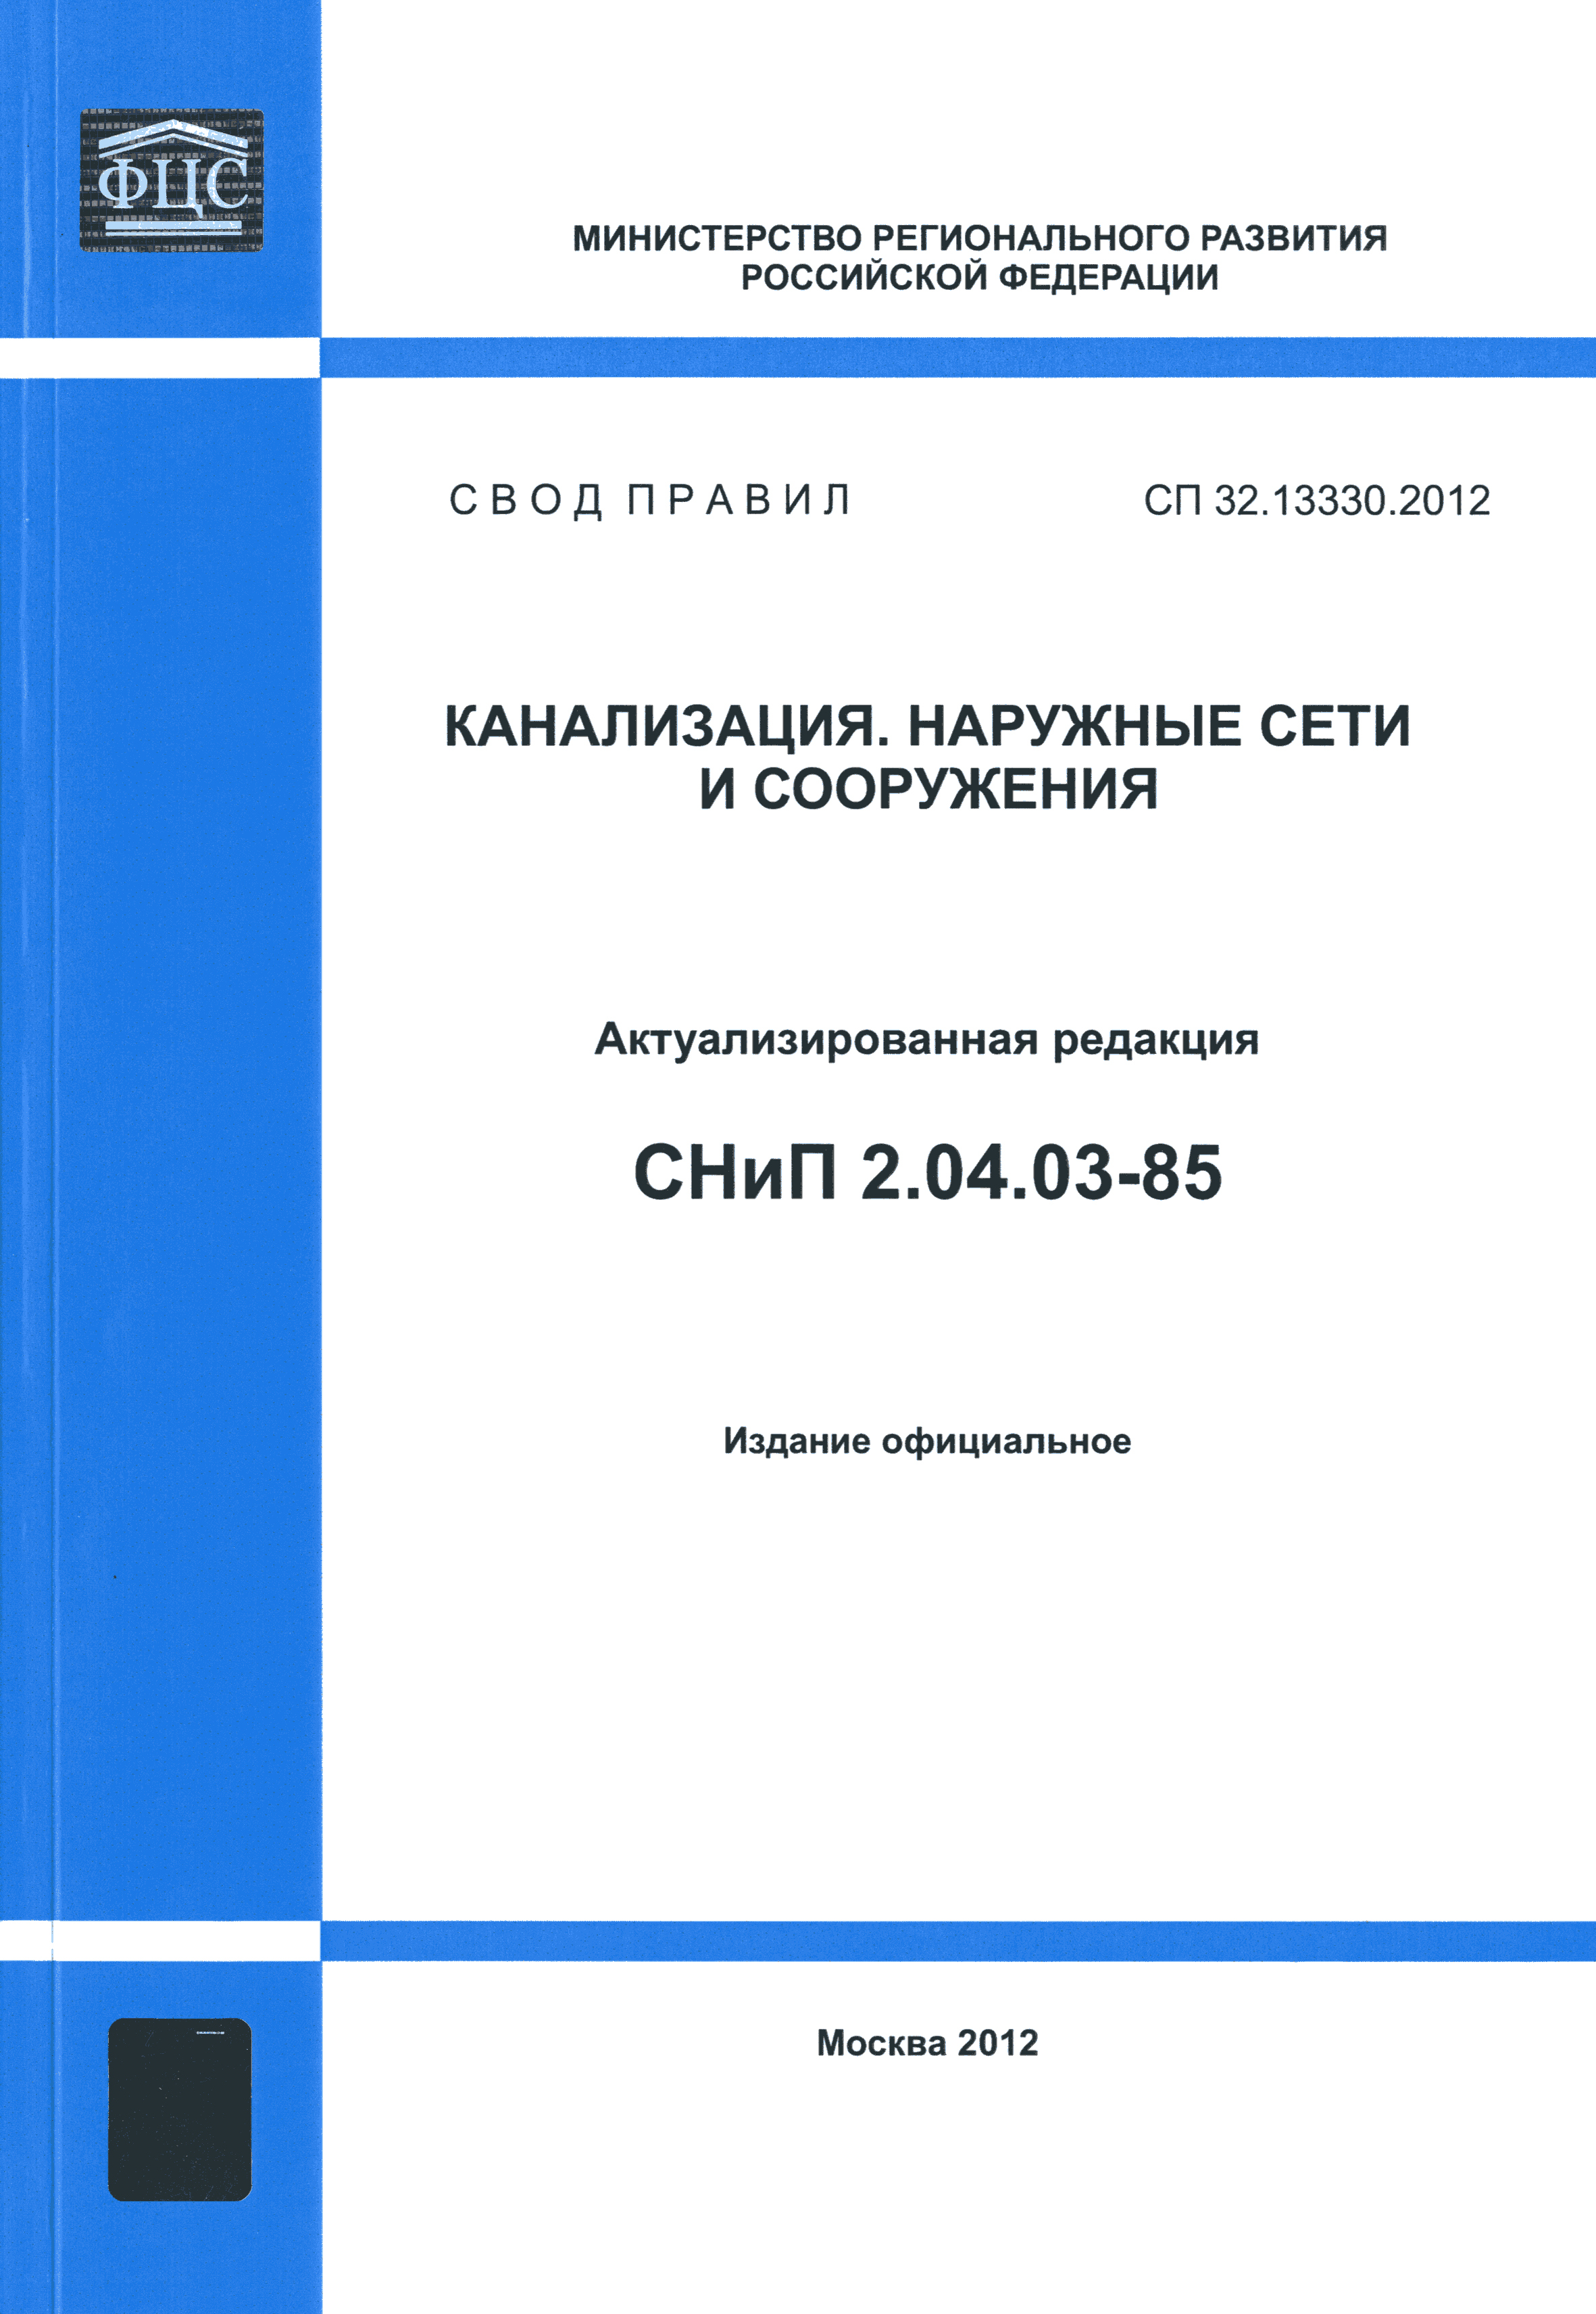 СП 32.13330.2012